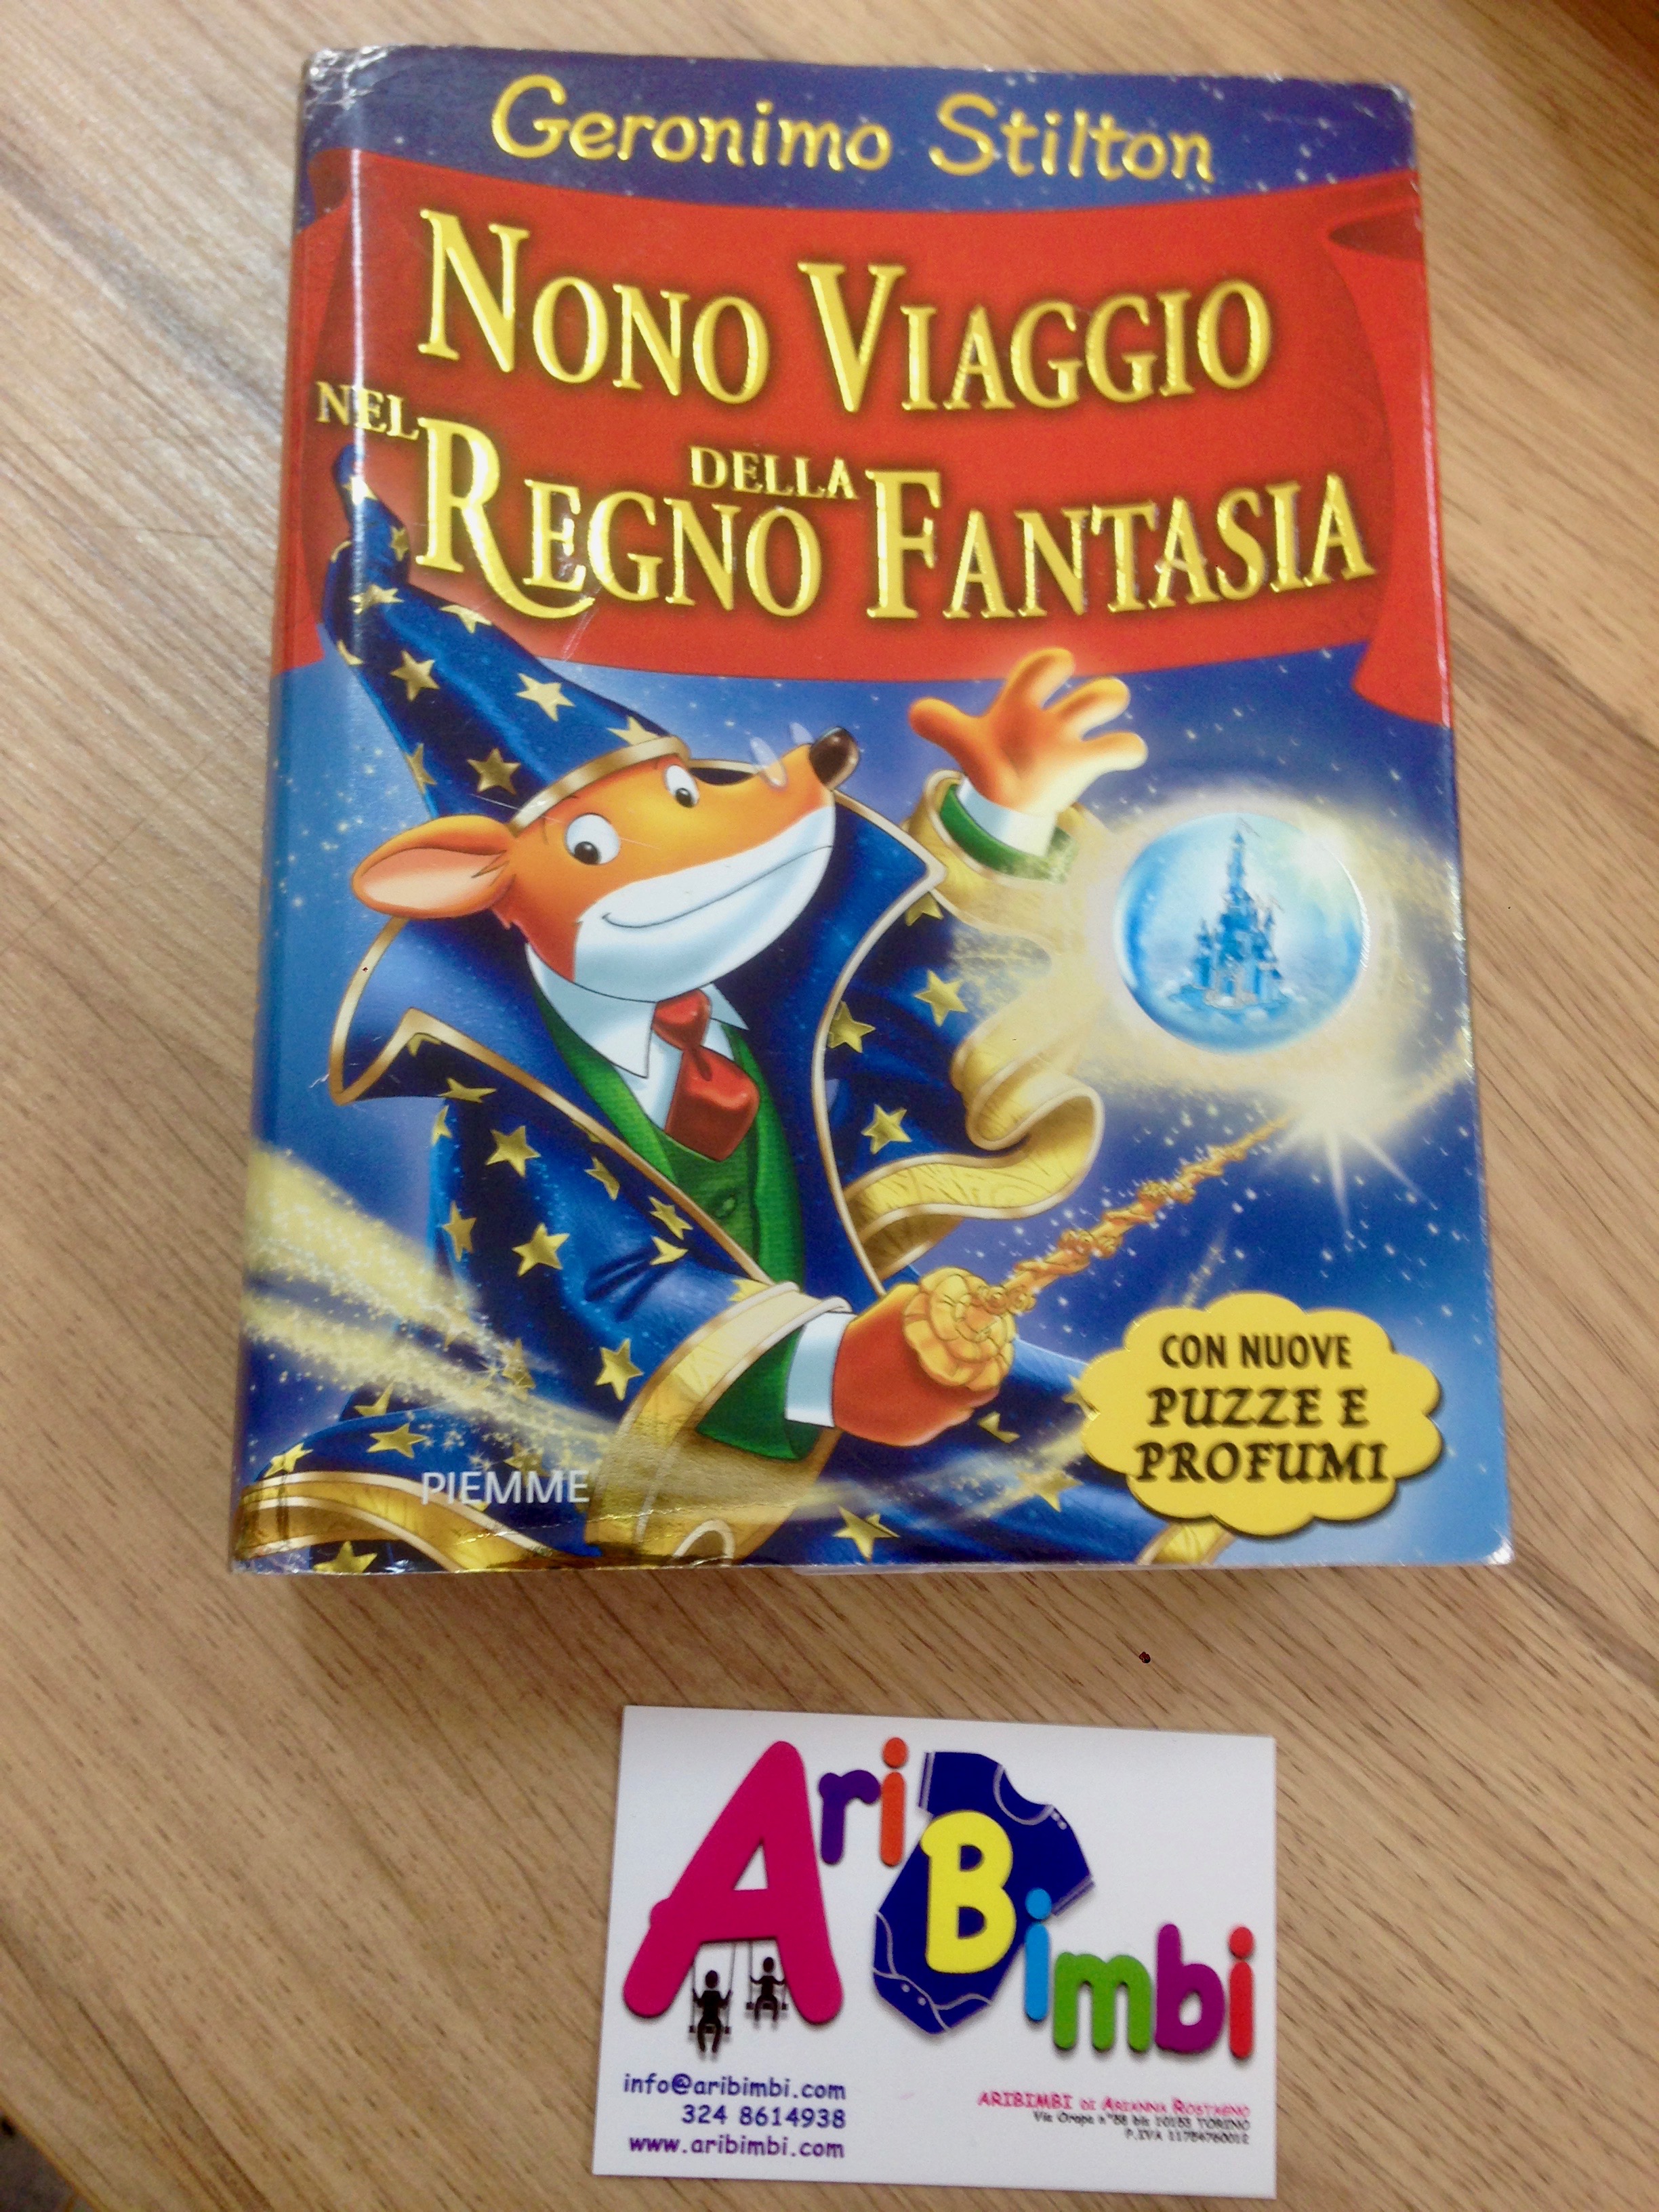 Nono Viaggio nel Regno della Fantasia book by Geronimo Stilton